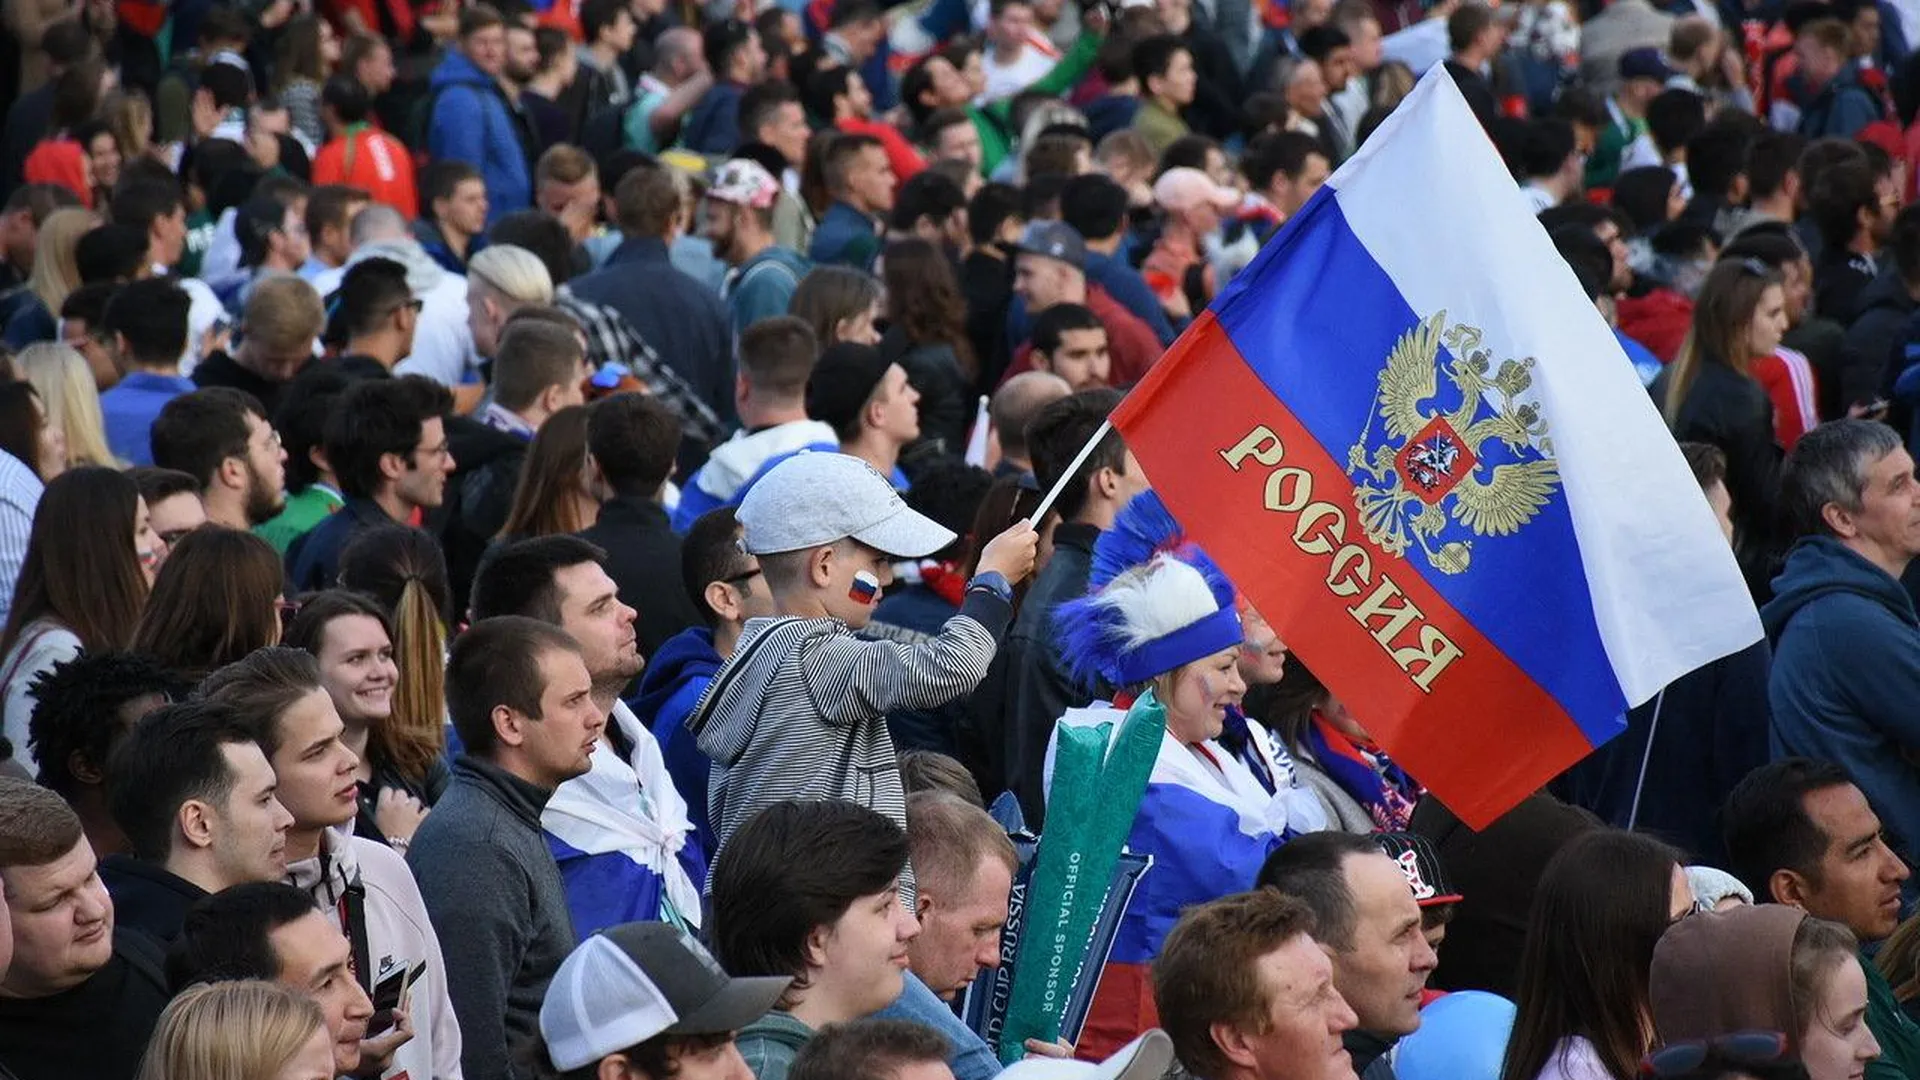 УЕФА не включил сборную России в число участников жеребьевки Лиги наций